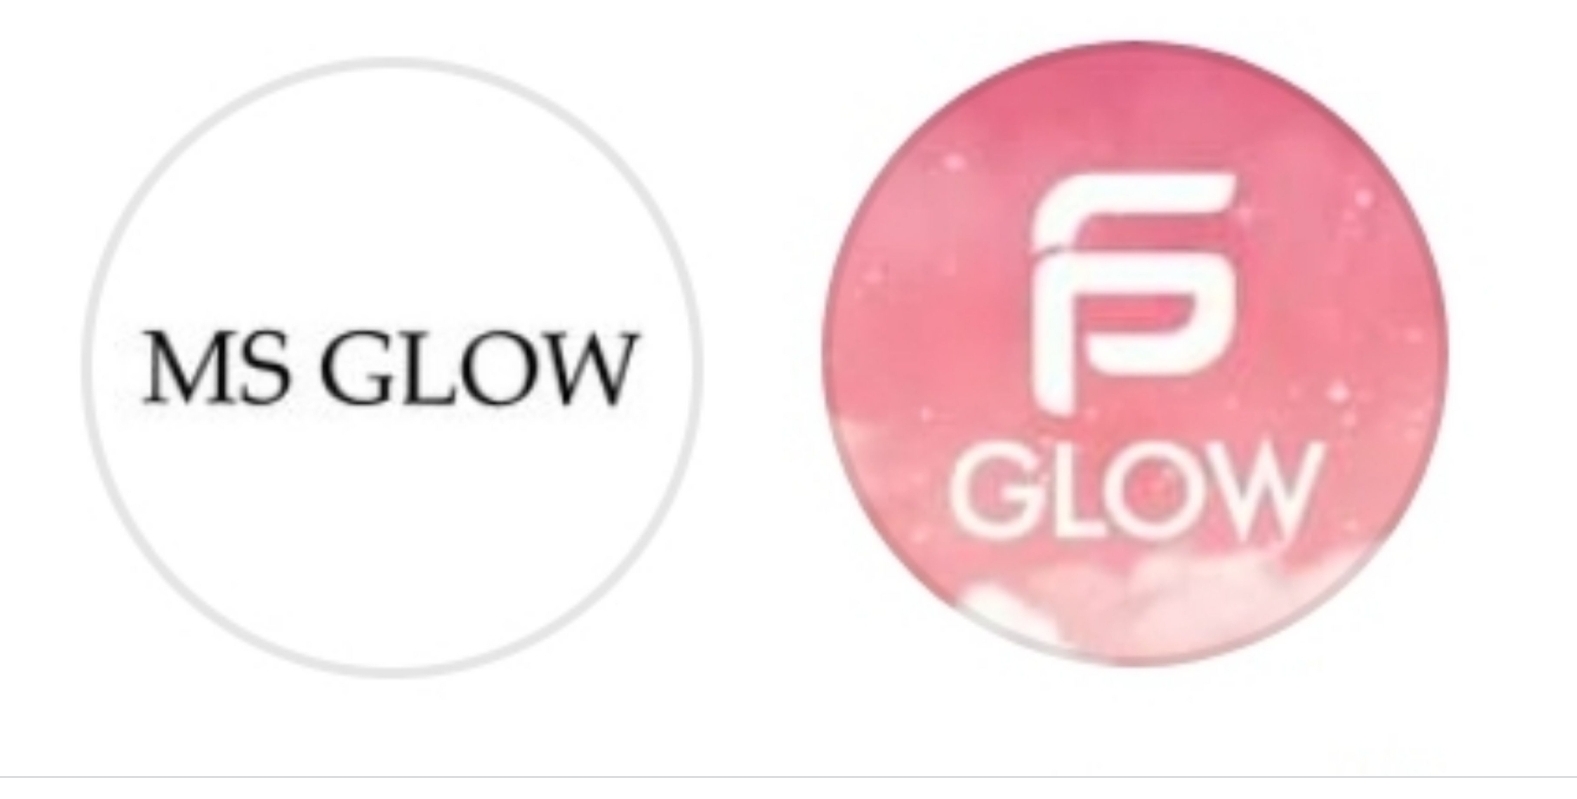 PS Glow dan MS Glow